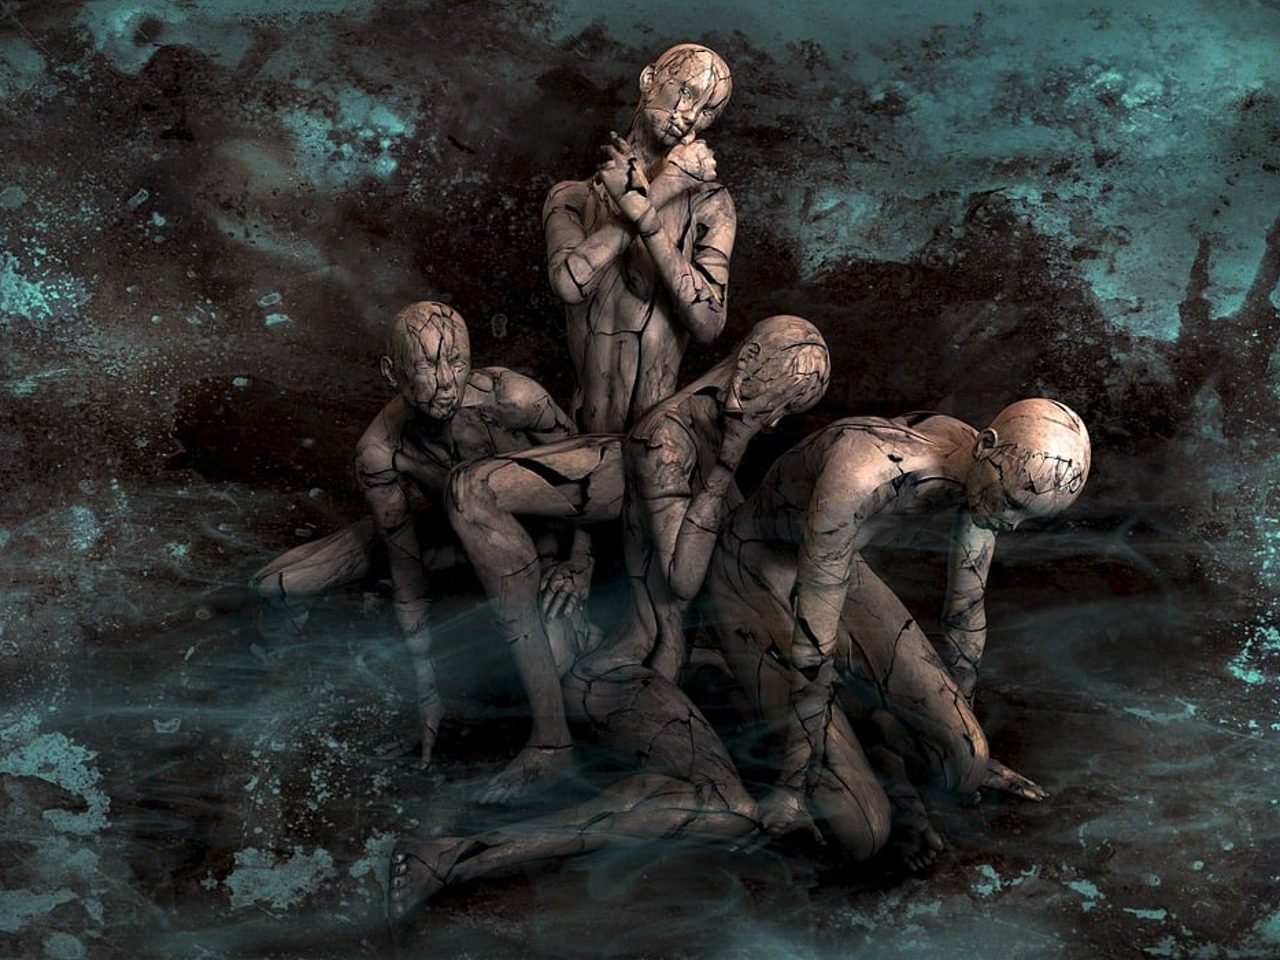 Image de fantsy avec des personnages humanoïdes surfond sombre